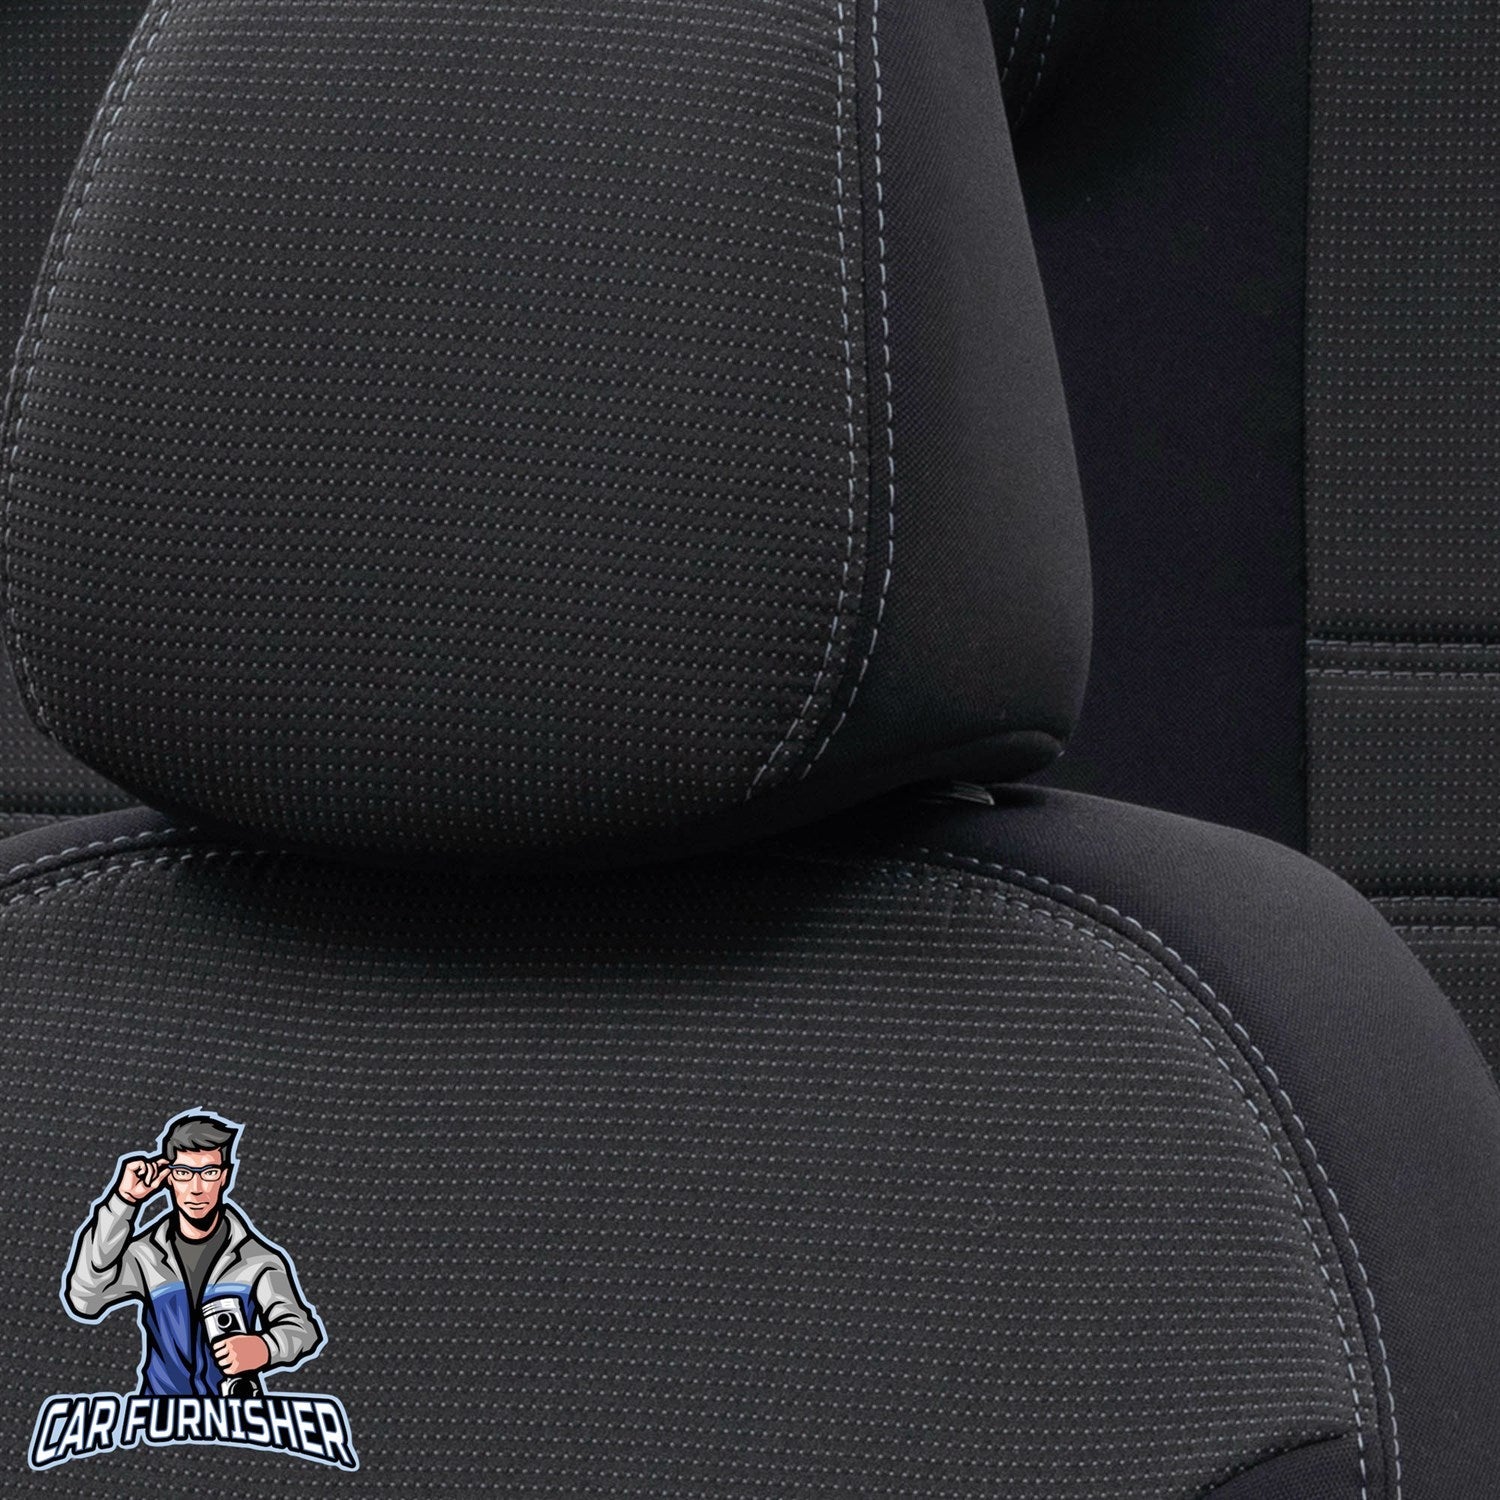 Kia Carens Seat Cover Original Jacquard Design Dark Gray Jacquard Fabric